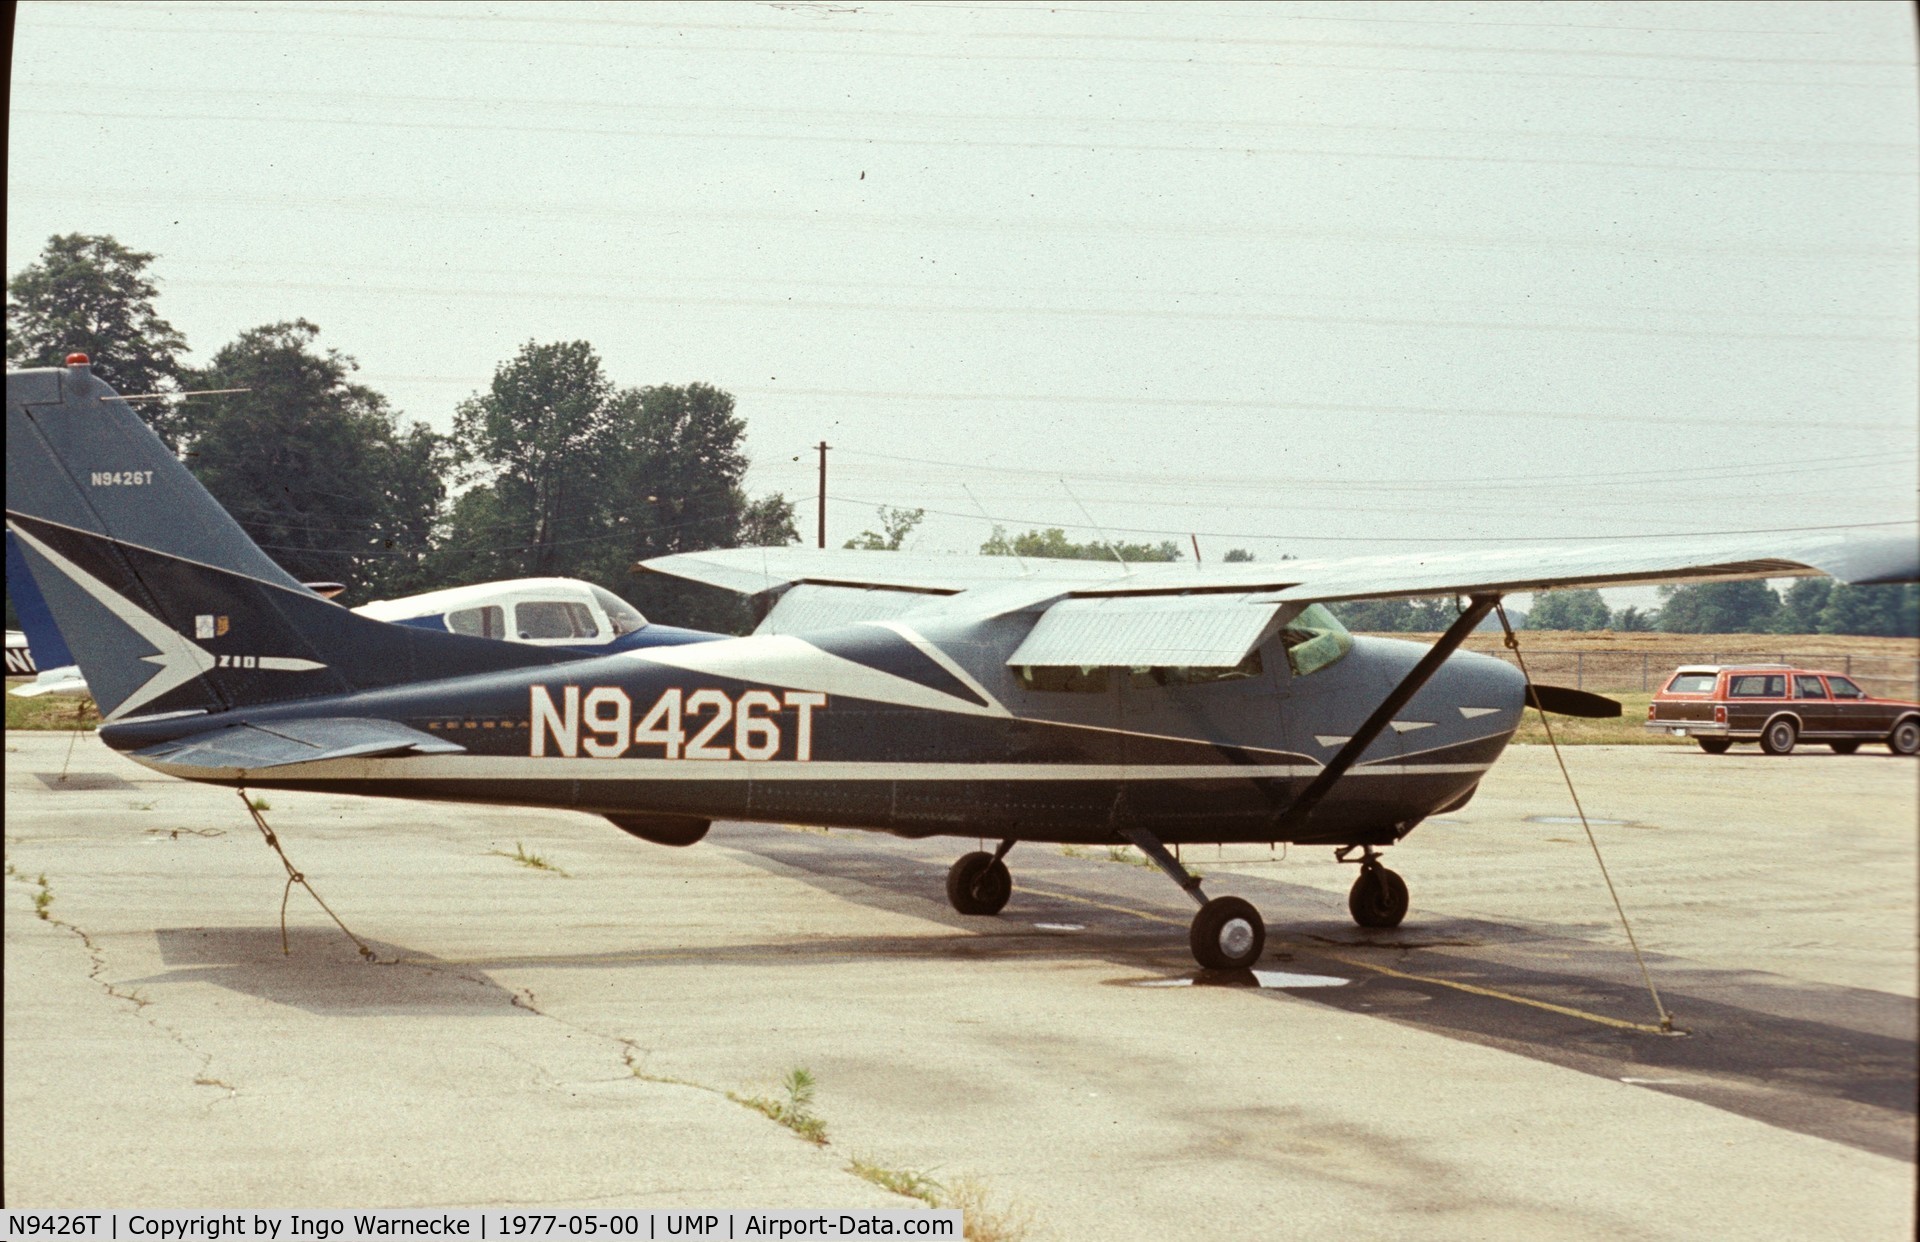 N9426T, 1959 Cessna 210 C/N 57226, Cessna 210 in what looks like the original design at Indianapolis Metropolitan Airport